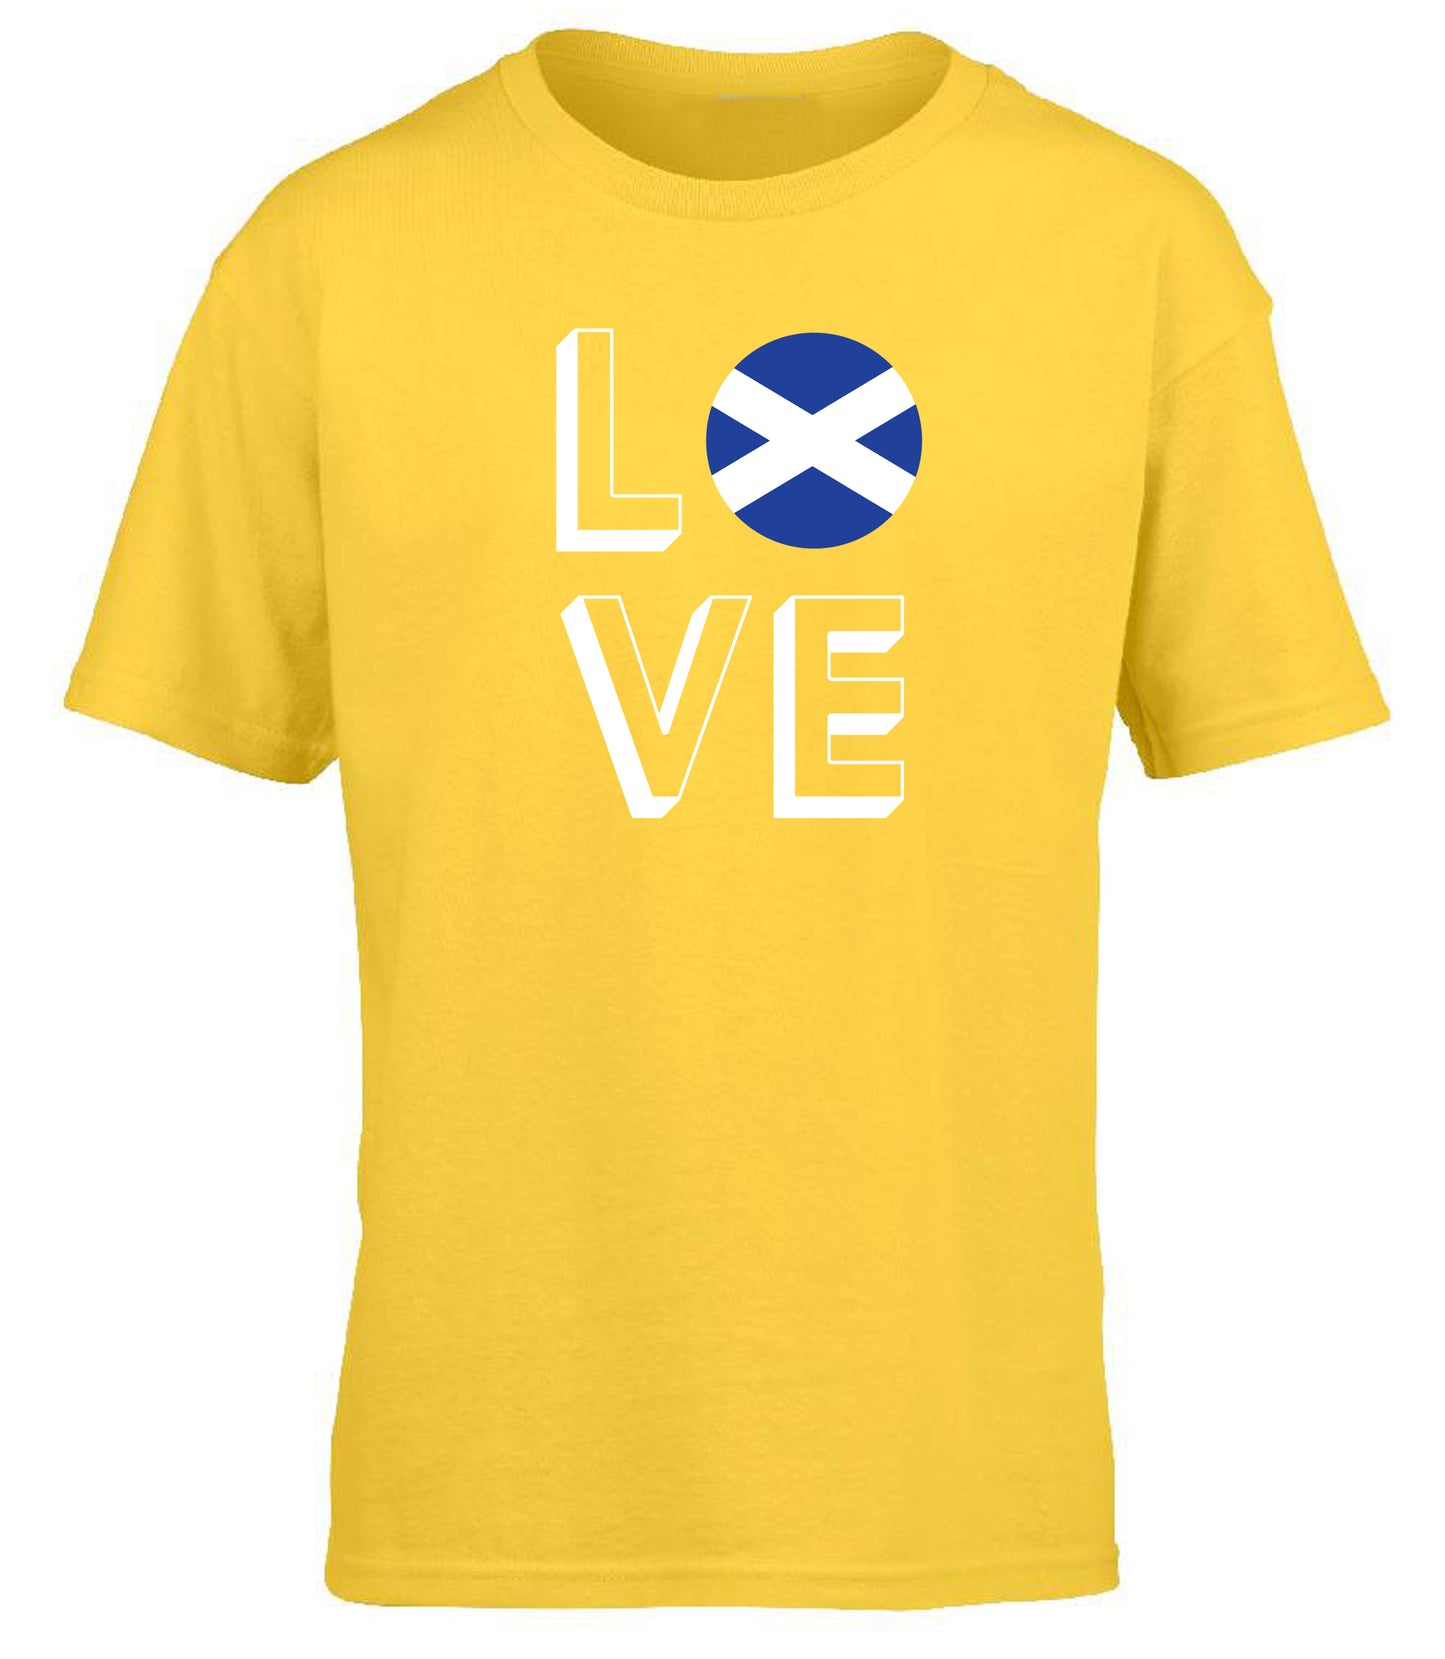 Love Scotland children's T-shirt